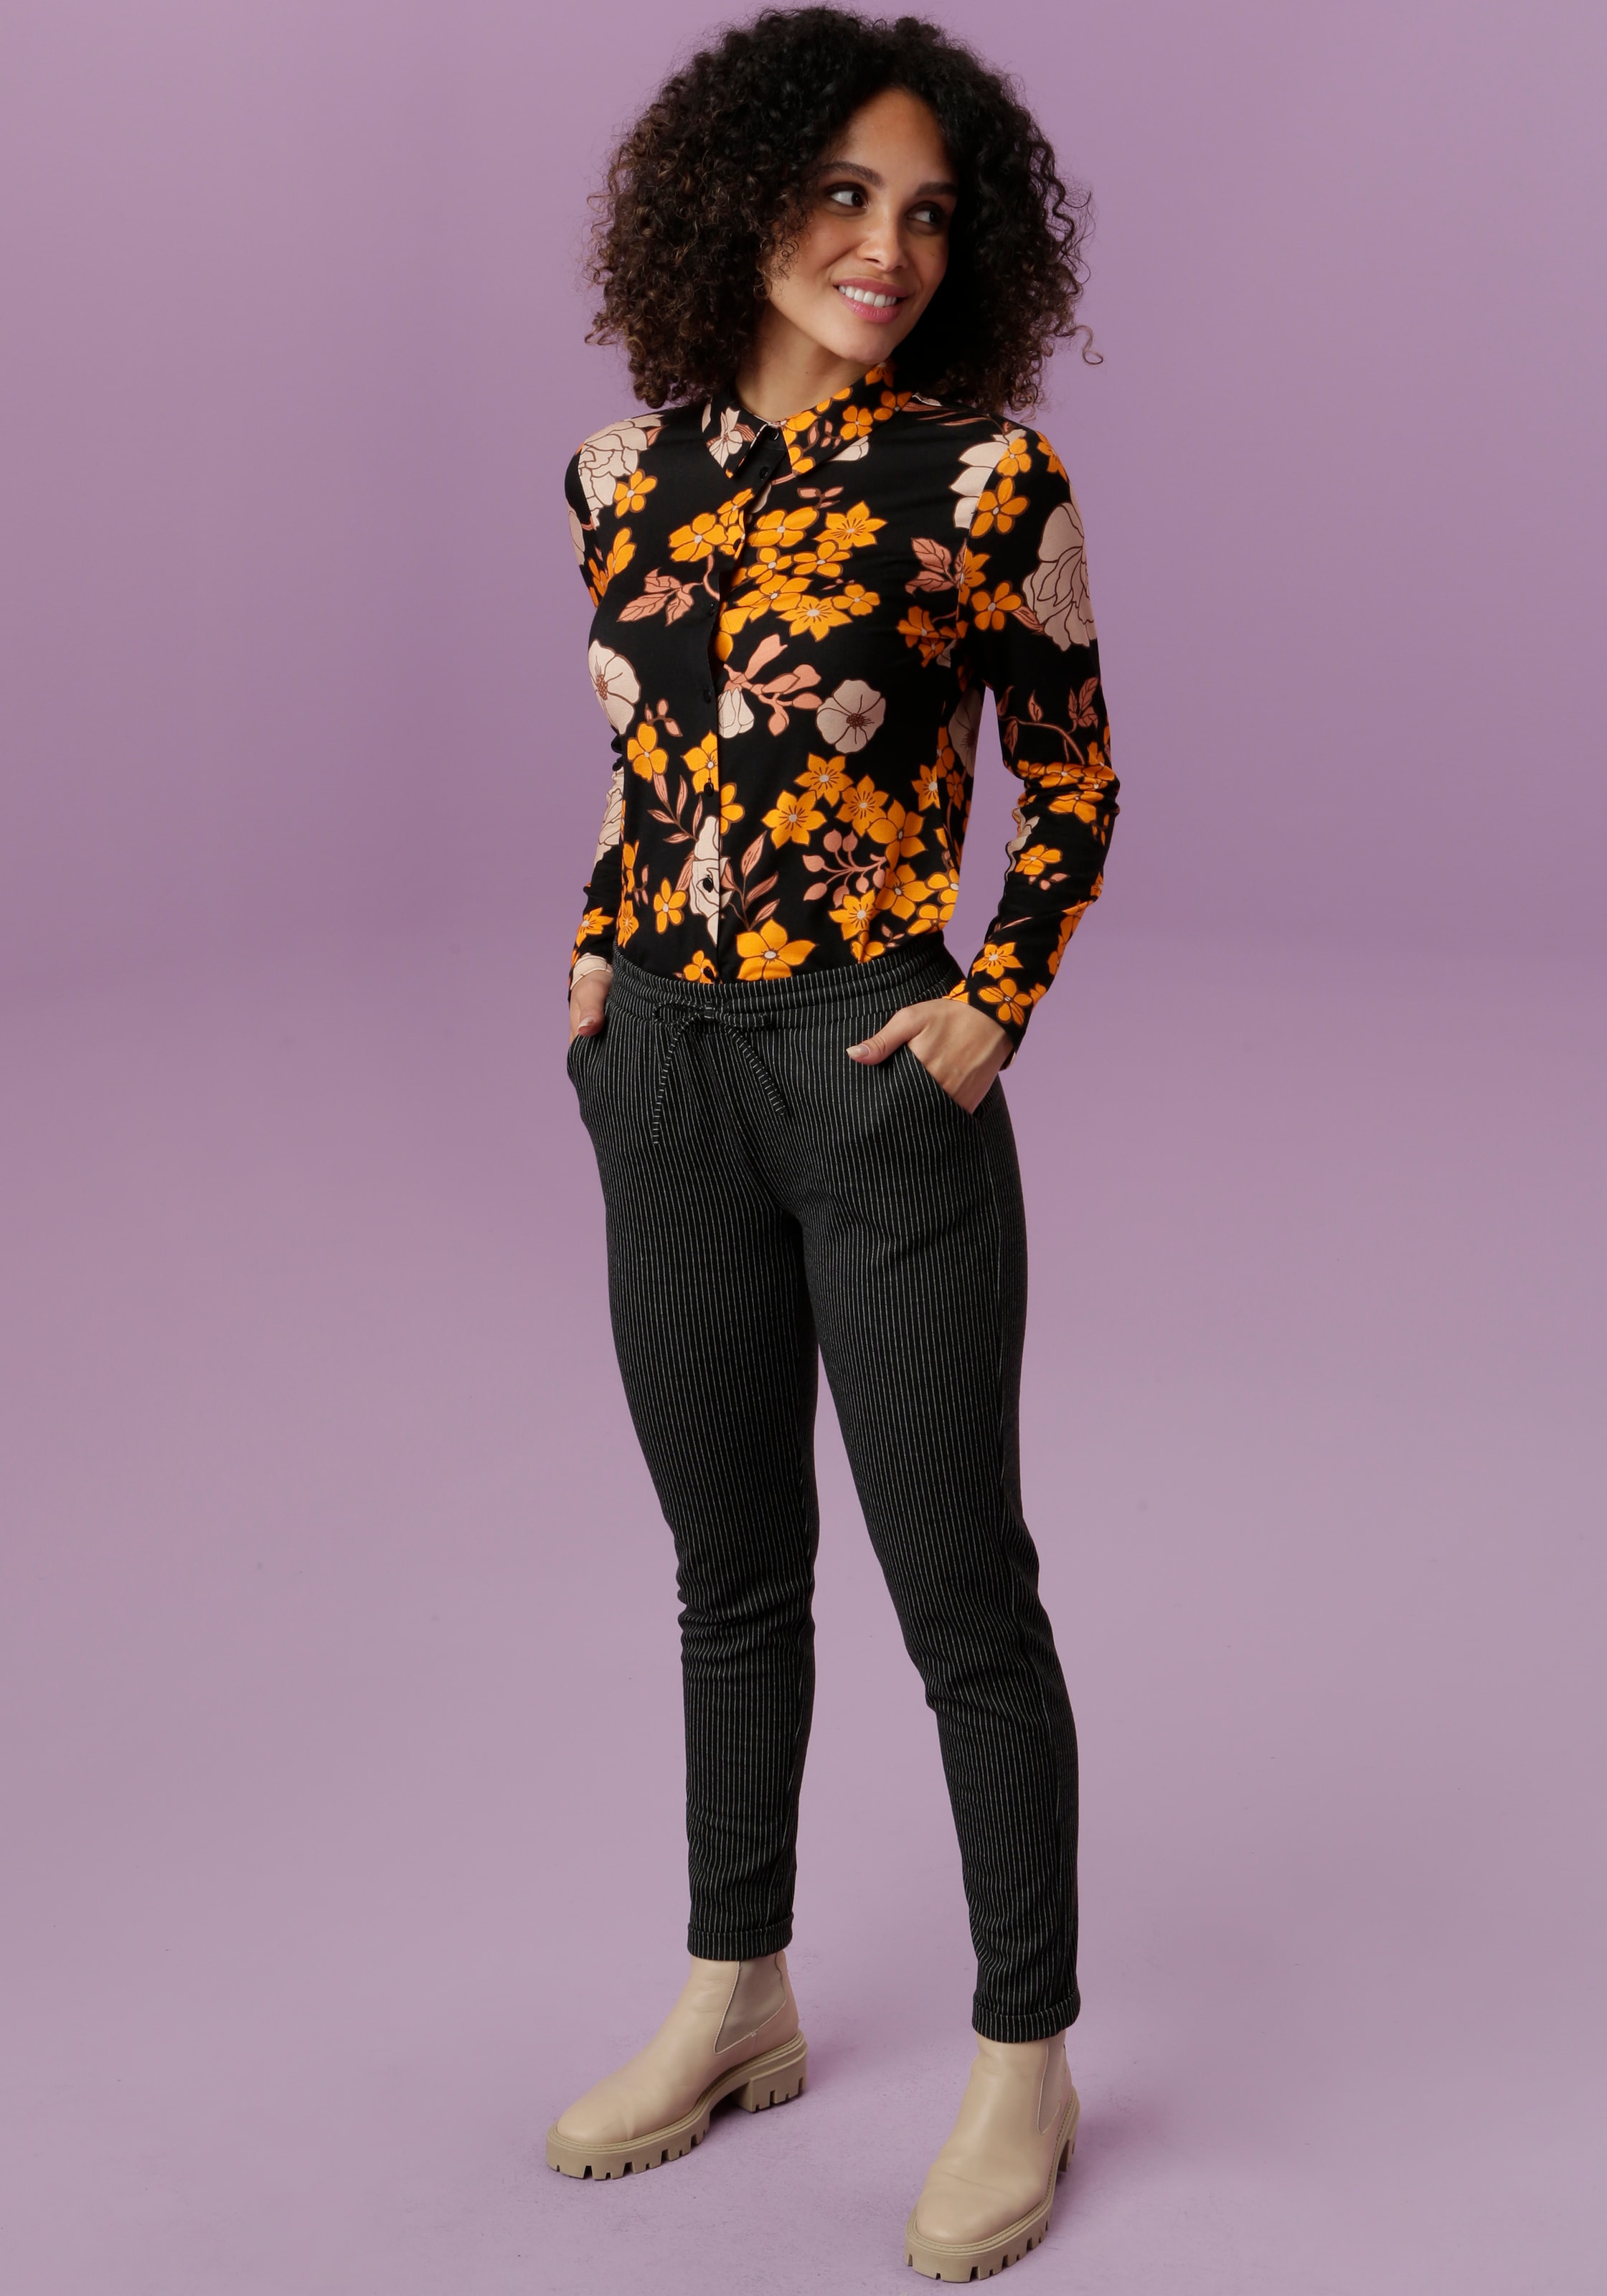 Shop OTTO Online Hemdbluse, SELECTED farharmonischem Aniston mit im Blumendruck